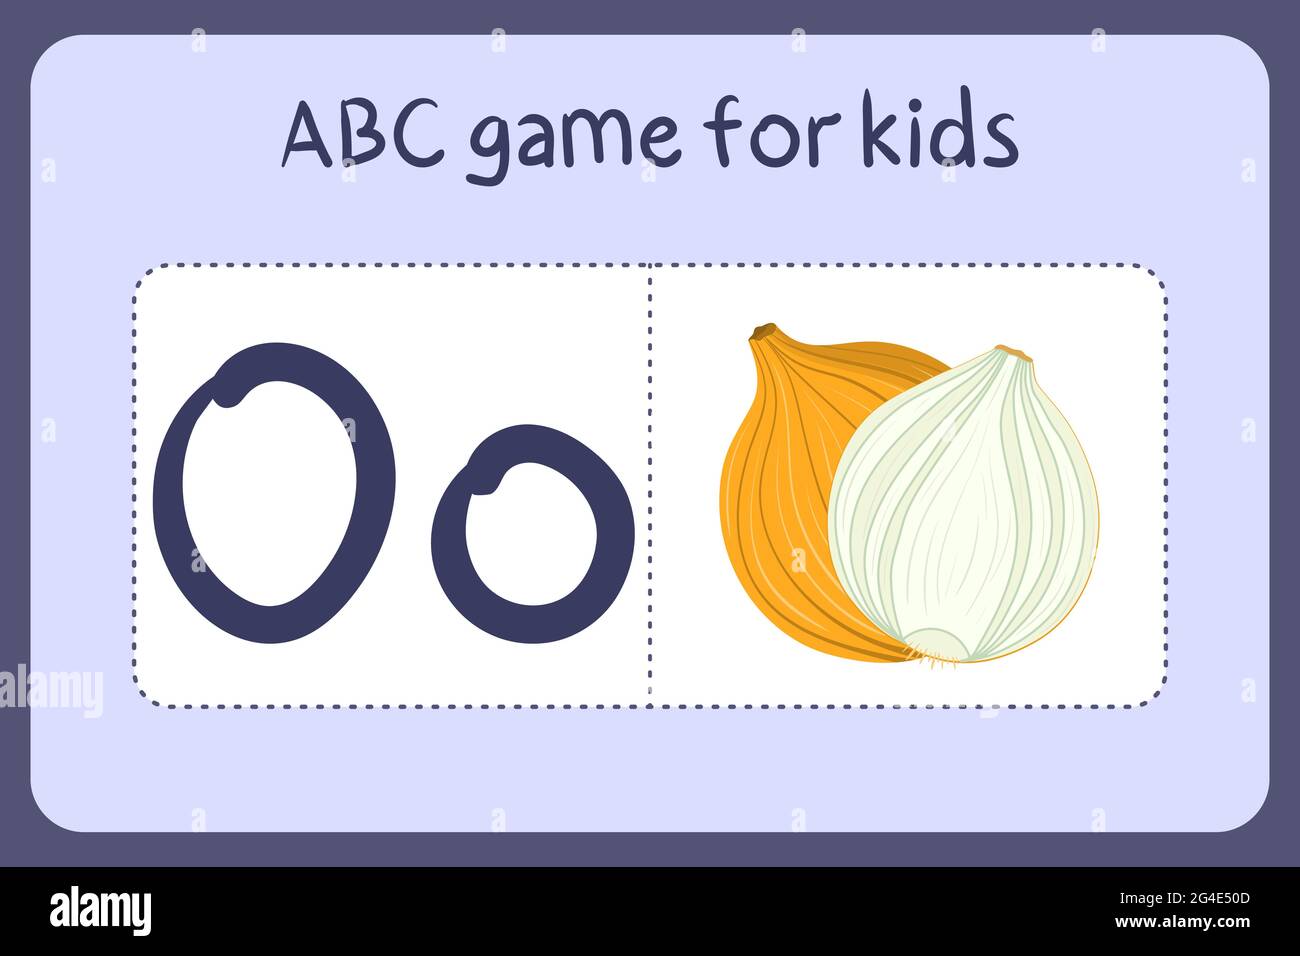 Kind Alphabet Mini-Spiele im Cartoon-Stil mit dem Buchstaben O - Zwiebel. Vektor-Illustration für Spiel-Design - Schneiden und spielen. Lerne abc mit Flash-Karten für Obst und Gemüse. Stock Vektor